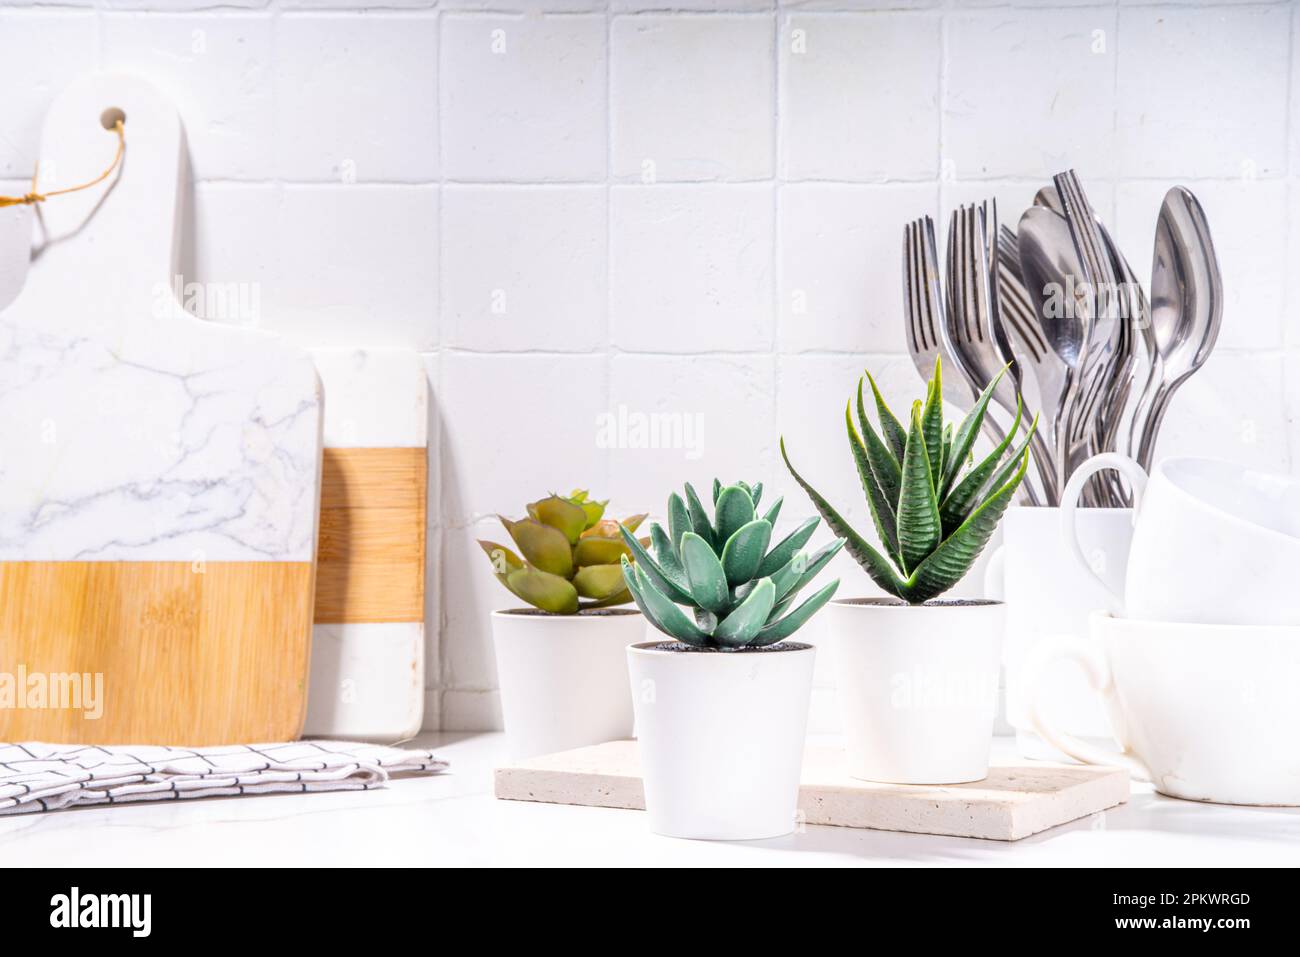 Hausgärtnern, Pflanzen in der Küchenecke. Weiße Töpfe mit verschiedenen Sukkulenten auf dem Küchentisch mit Utensilien, Schneidebrettern, weißer Marmorrücken mit Fliesen Stockfoto